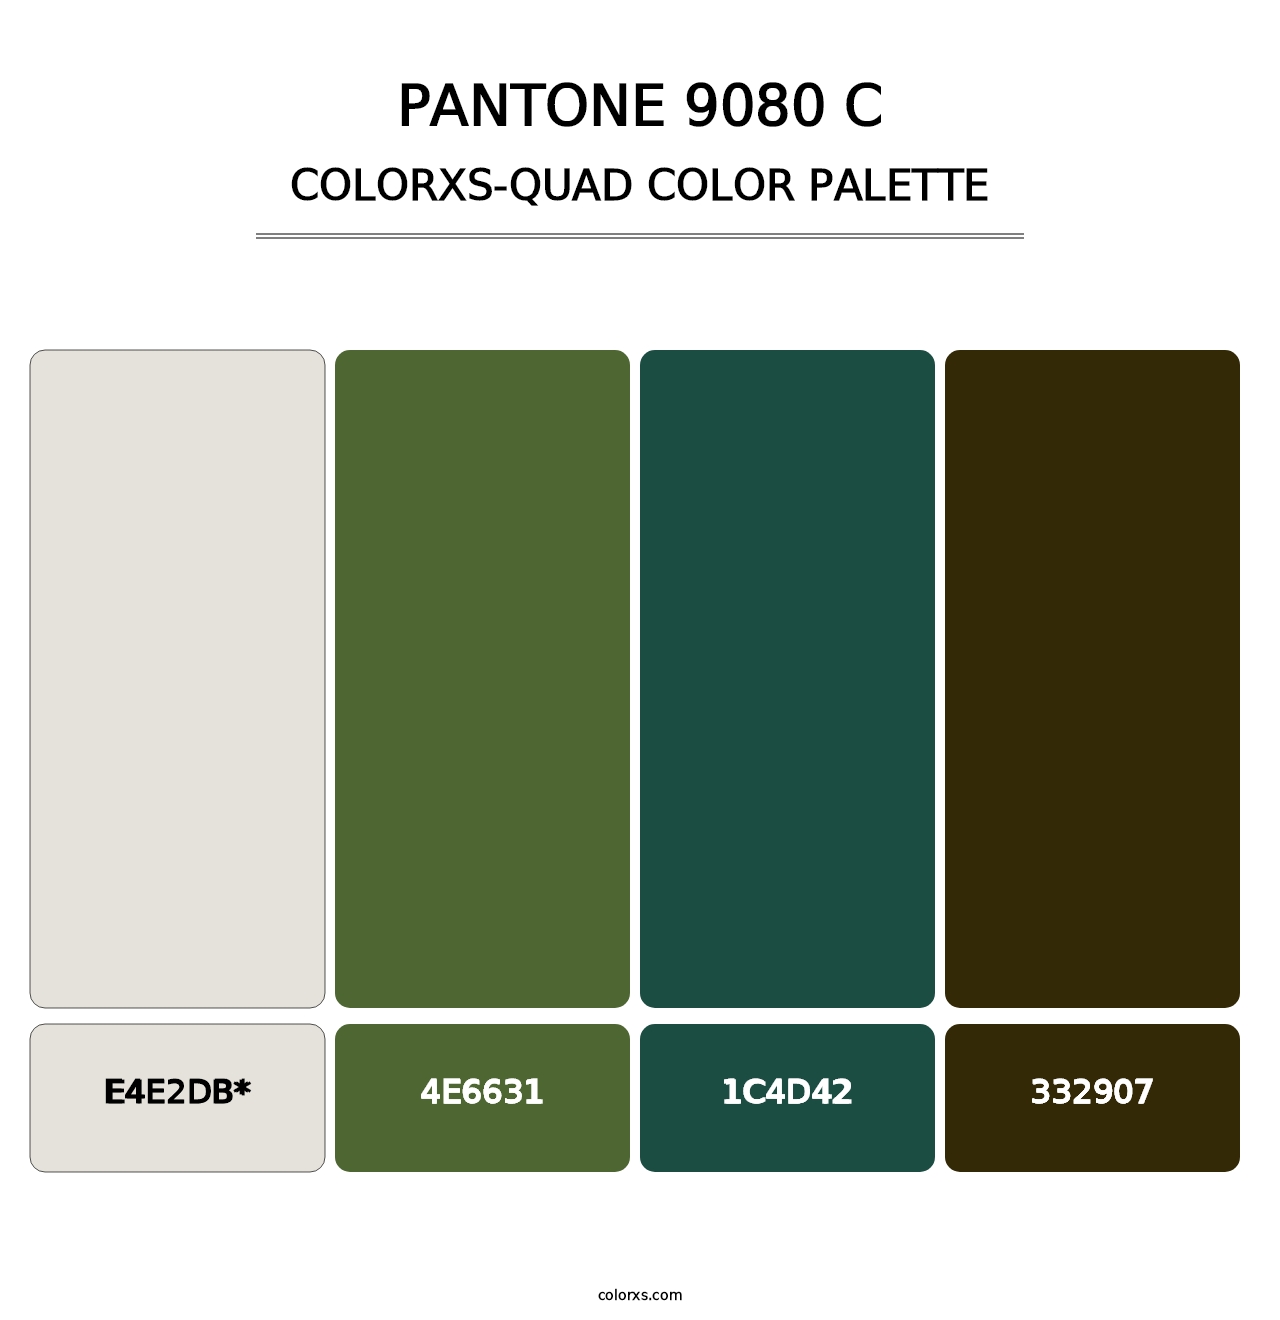 PANTONE 9080 C - Colorxs Quad Palette